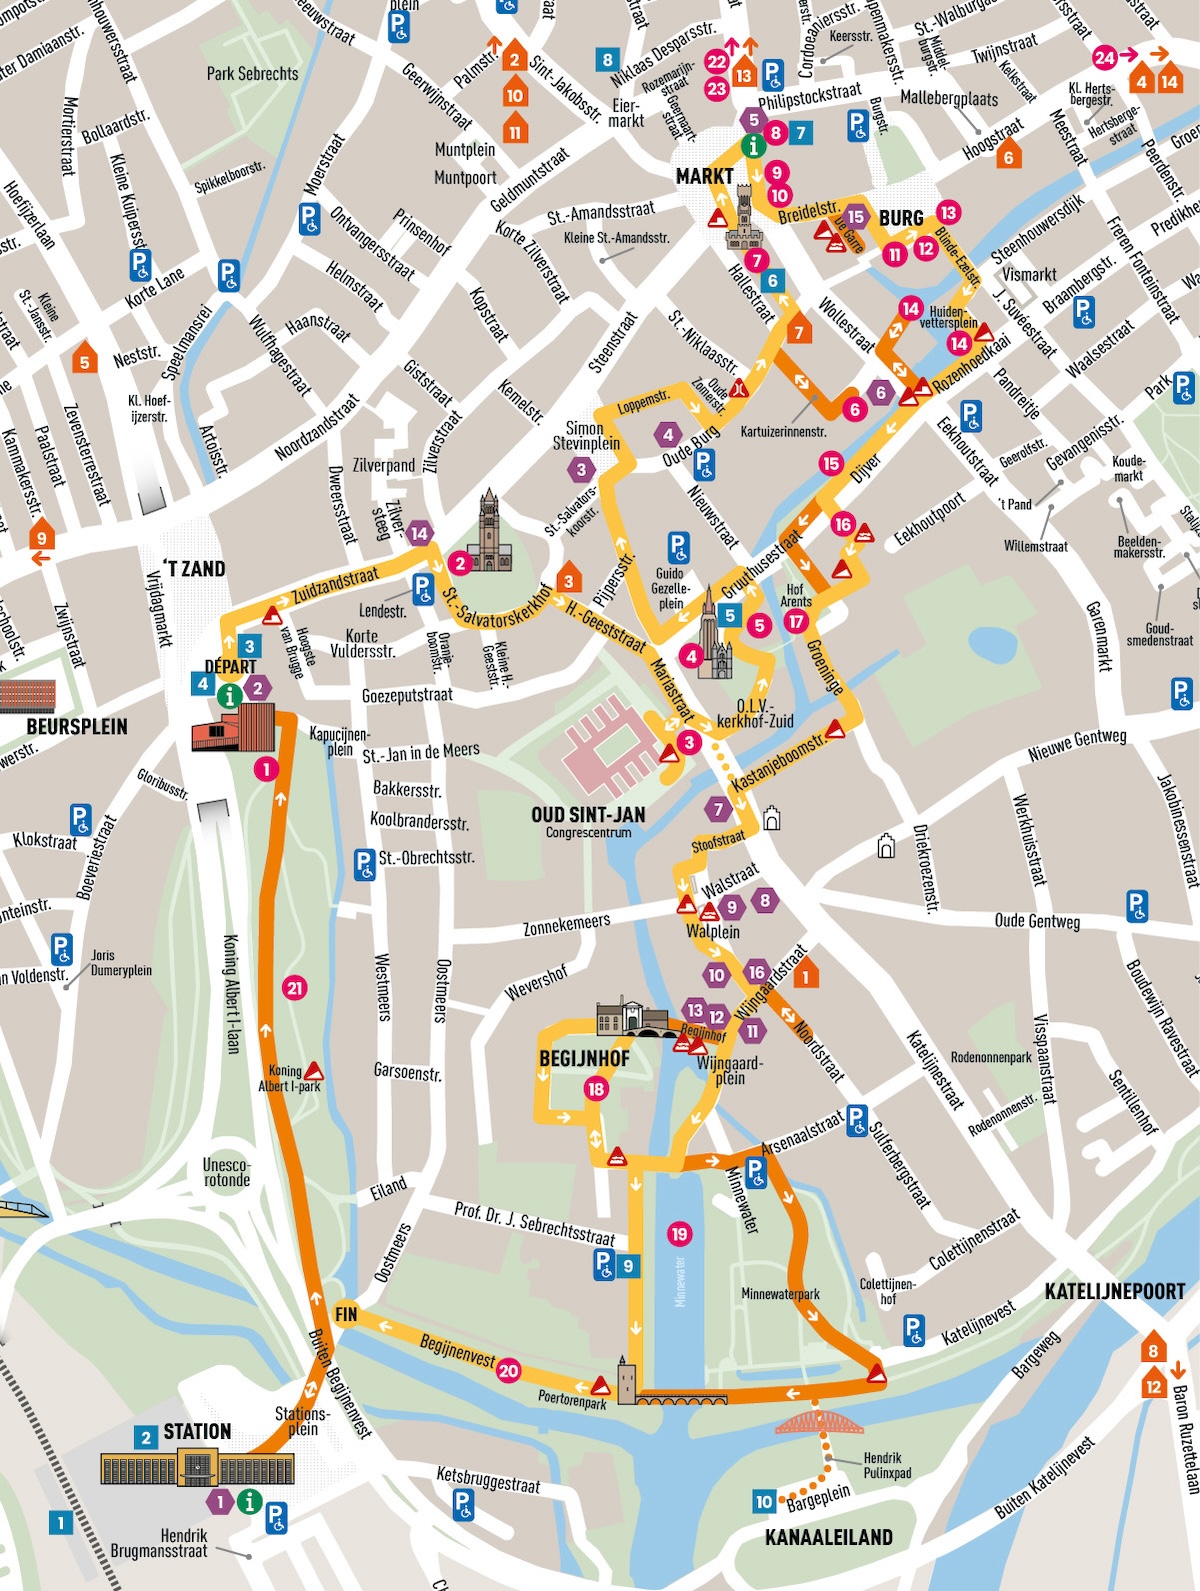 Carte de Bruges avec itinéraire indiqué. La carte est délimitée comme suit : Markt et Burg au nord, Koningin Astridpark à l'est, la gare et Kanaaleiland au sud, Beursplein à l'ouest.